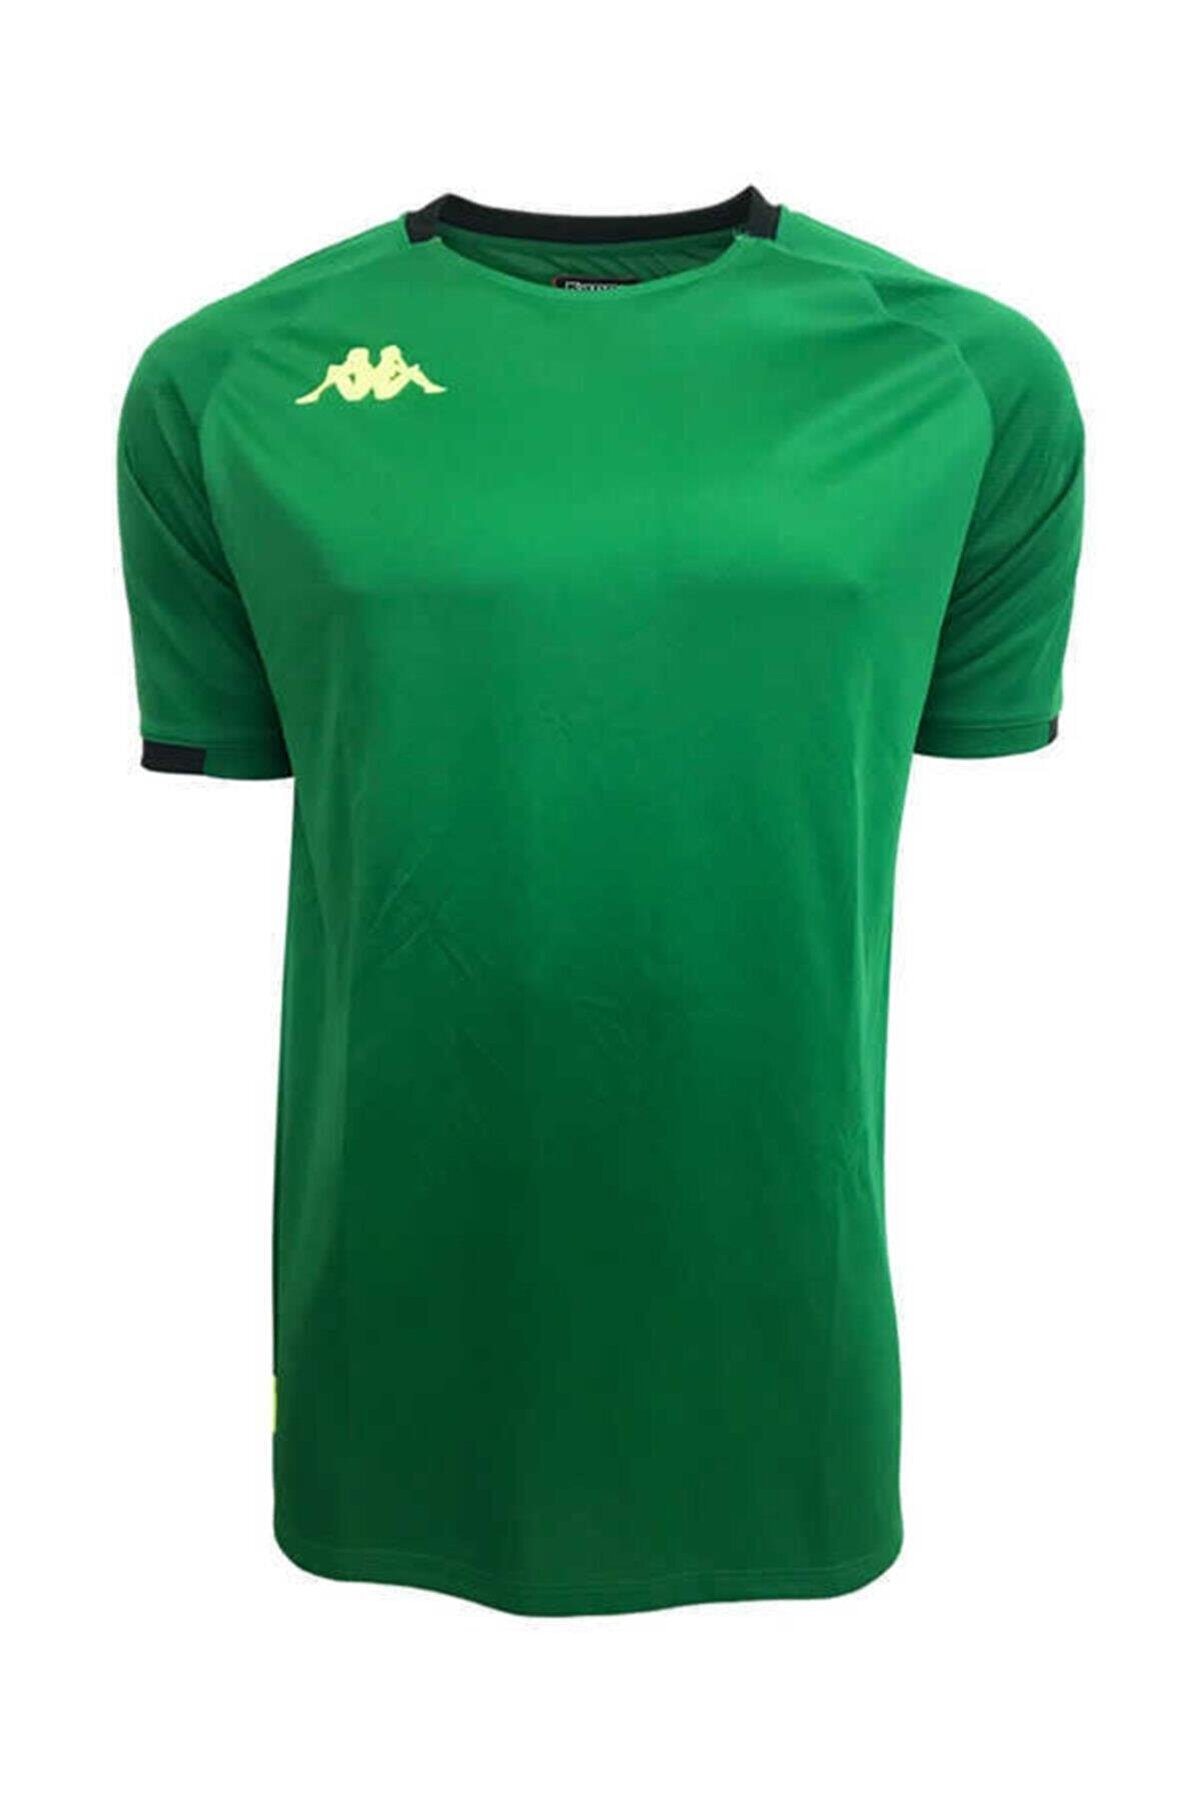 Kappa Erkek Yeşil T-shirt -Abou2